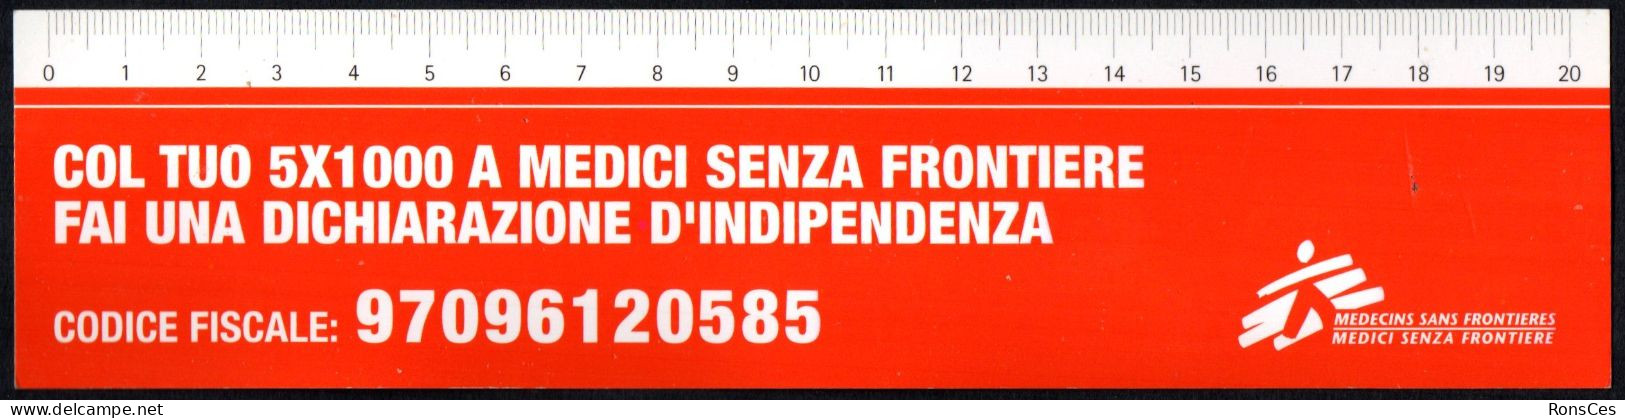 ITALIA SEGNALIBRO / BOOKMARK / RIGHELLO - MEDICI SENZA FRONTIERE COL TUO 5x1000 FAI UNA DICHIARAZIONE D'INDIPENDENZA - I - Bookmarks